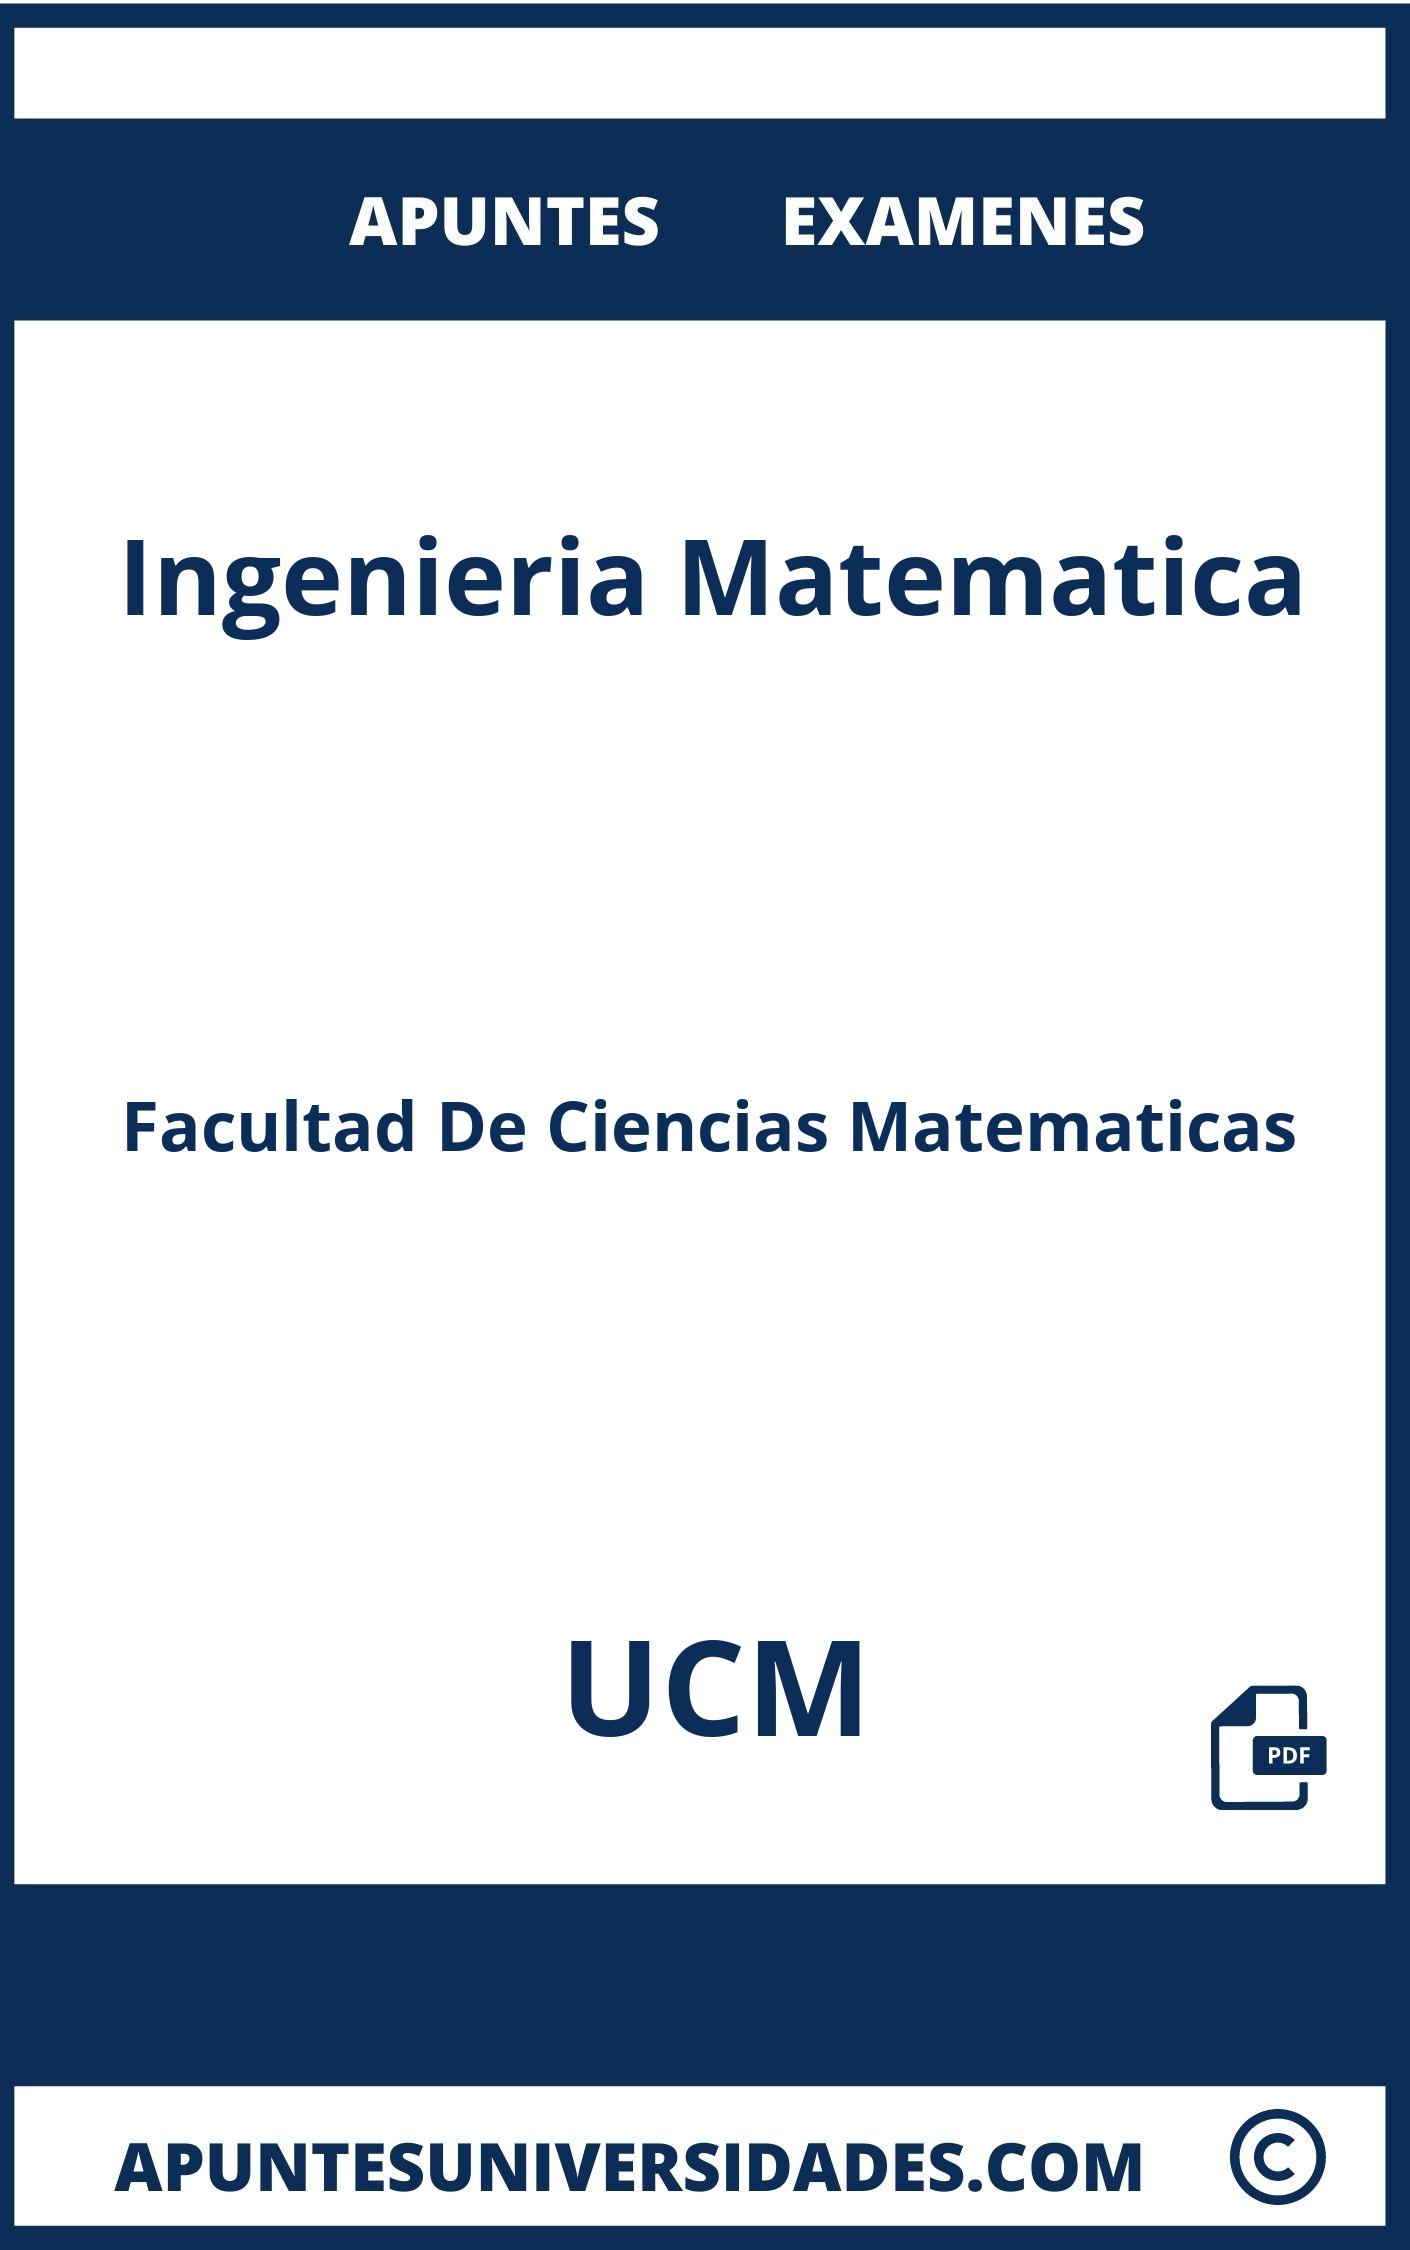 Apuntes y Examenes de Ingenieria Matematica UCM